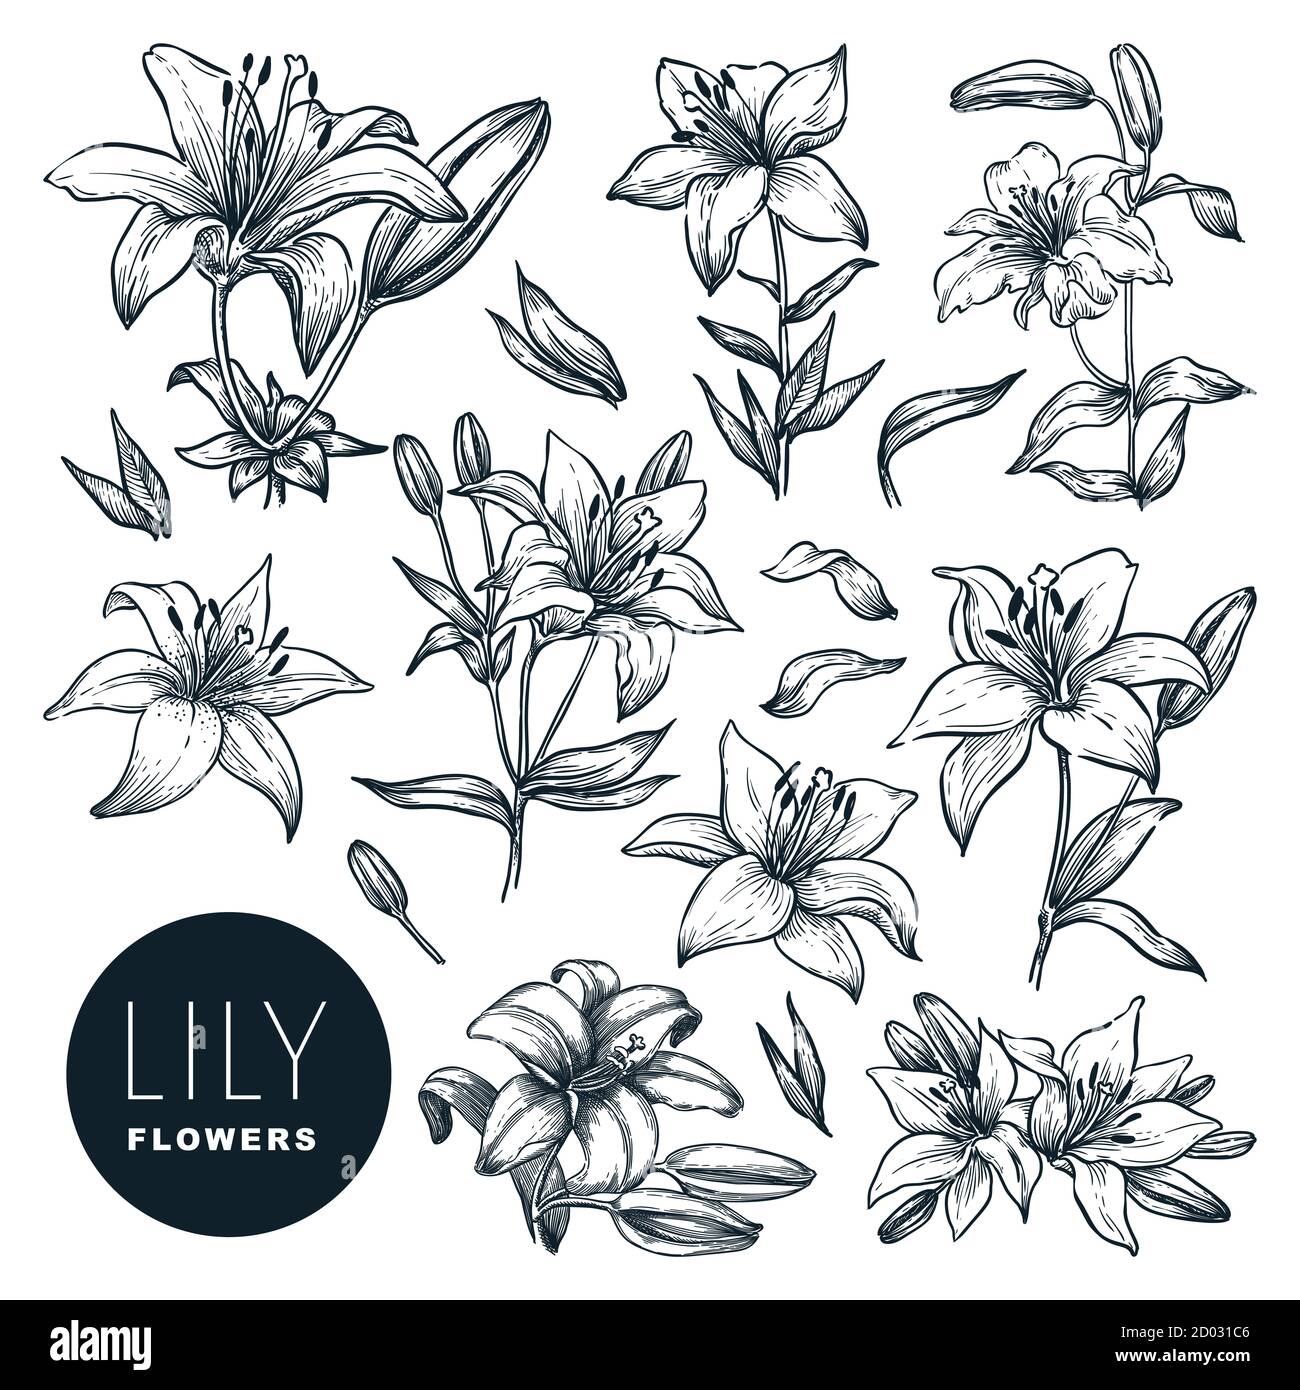 Lily belle fleurs en fleurs ensemble, isolé sur fond blanc. Illustration d'esquisse vectorielle dessinée à la main. Plantes de printemps ou d'été et nature florale de Illustration de Vecteur